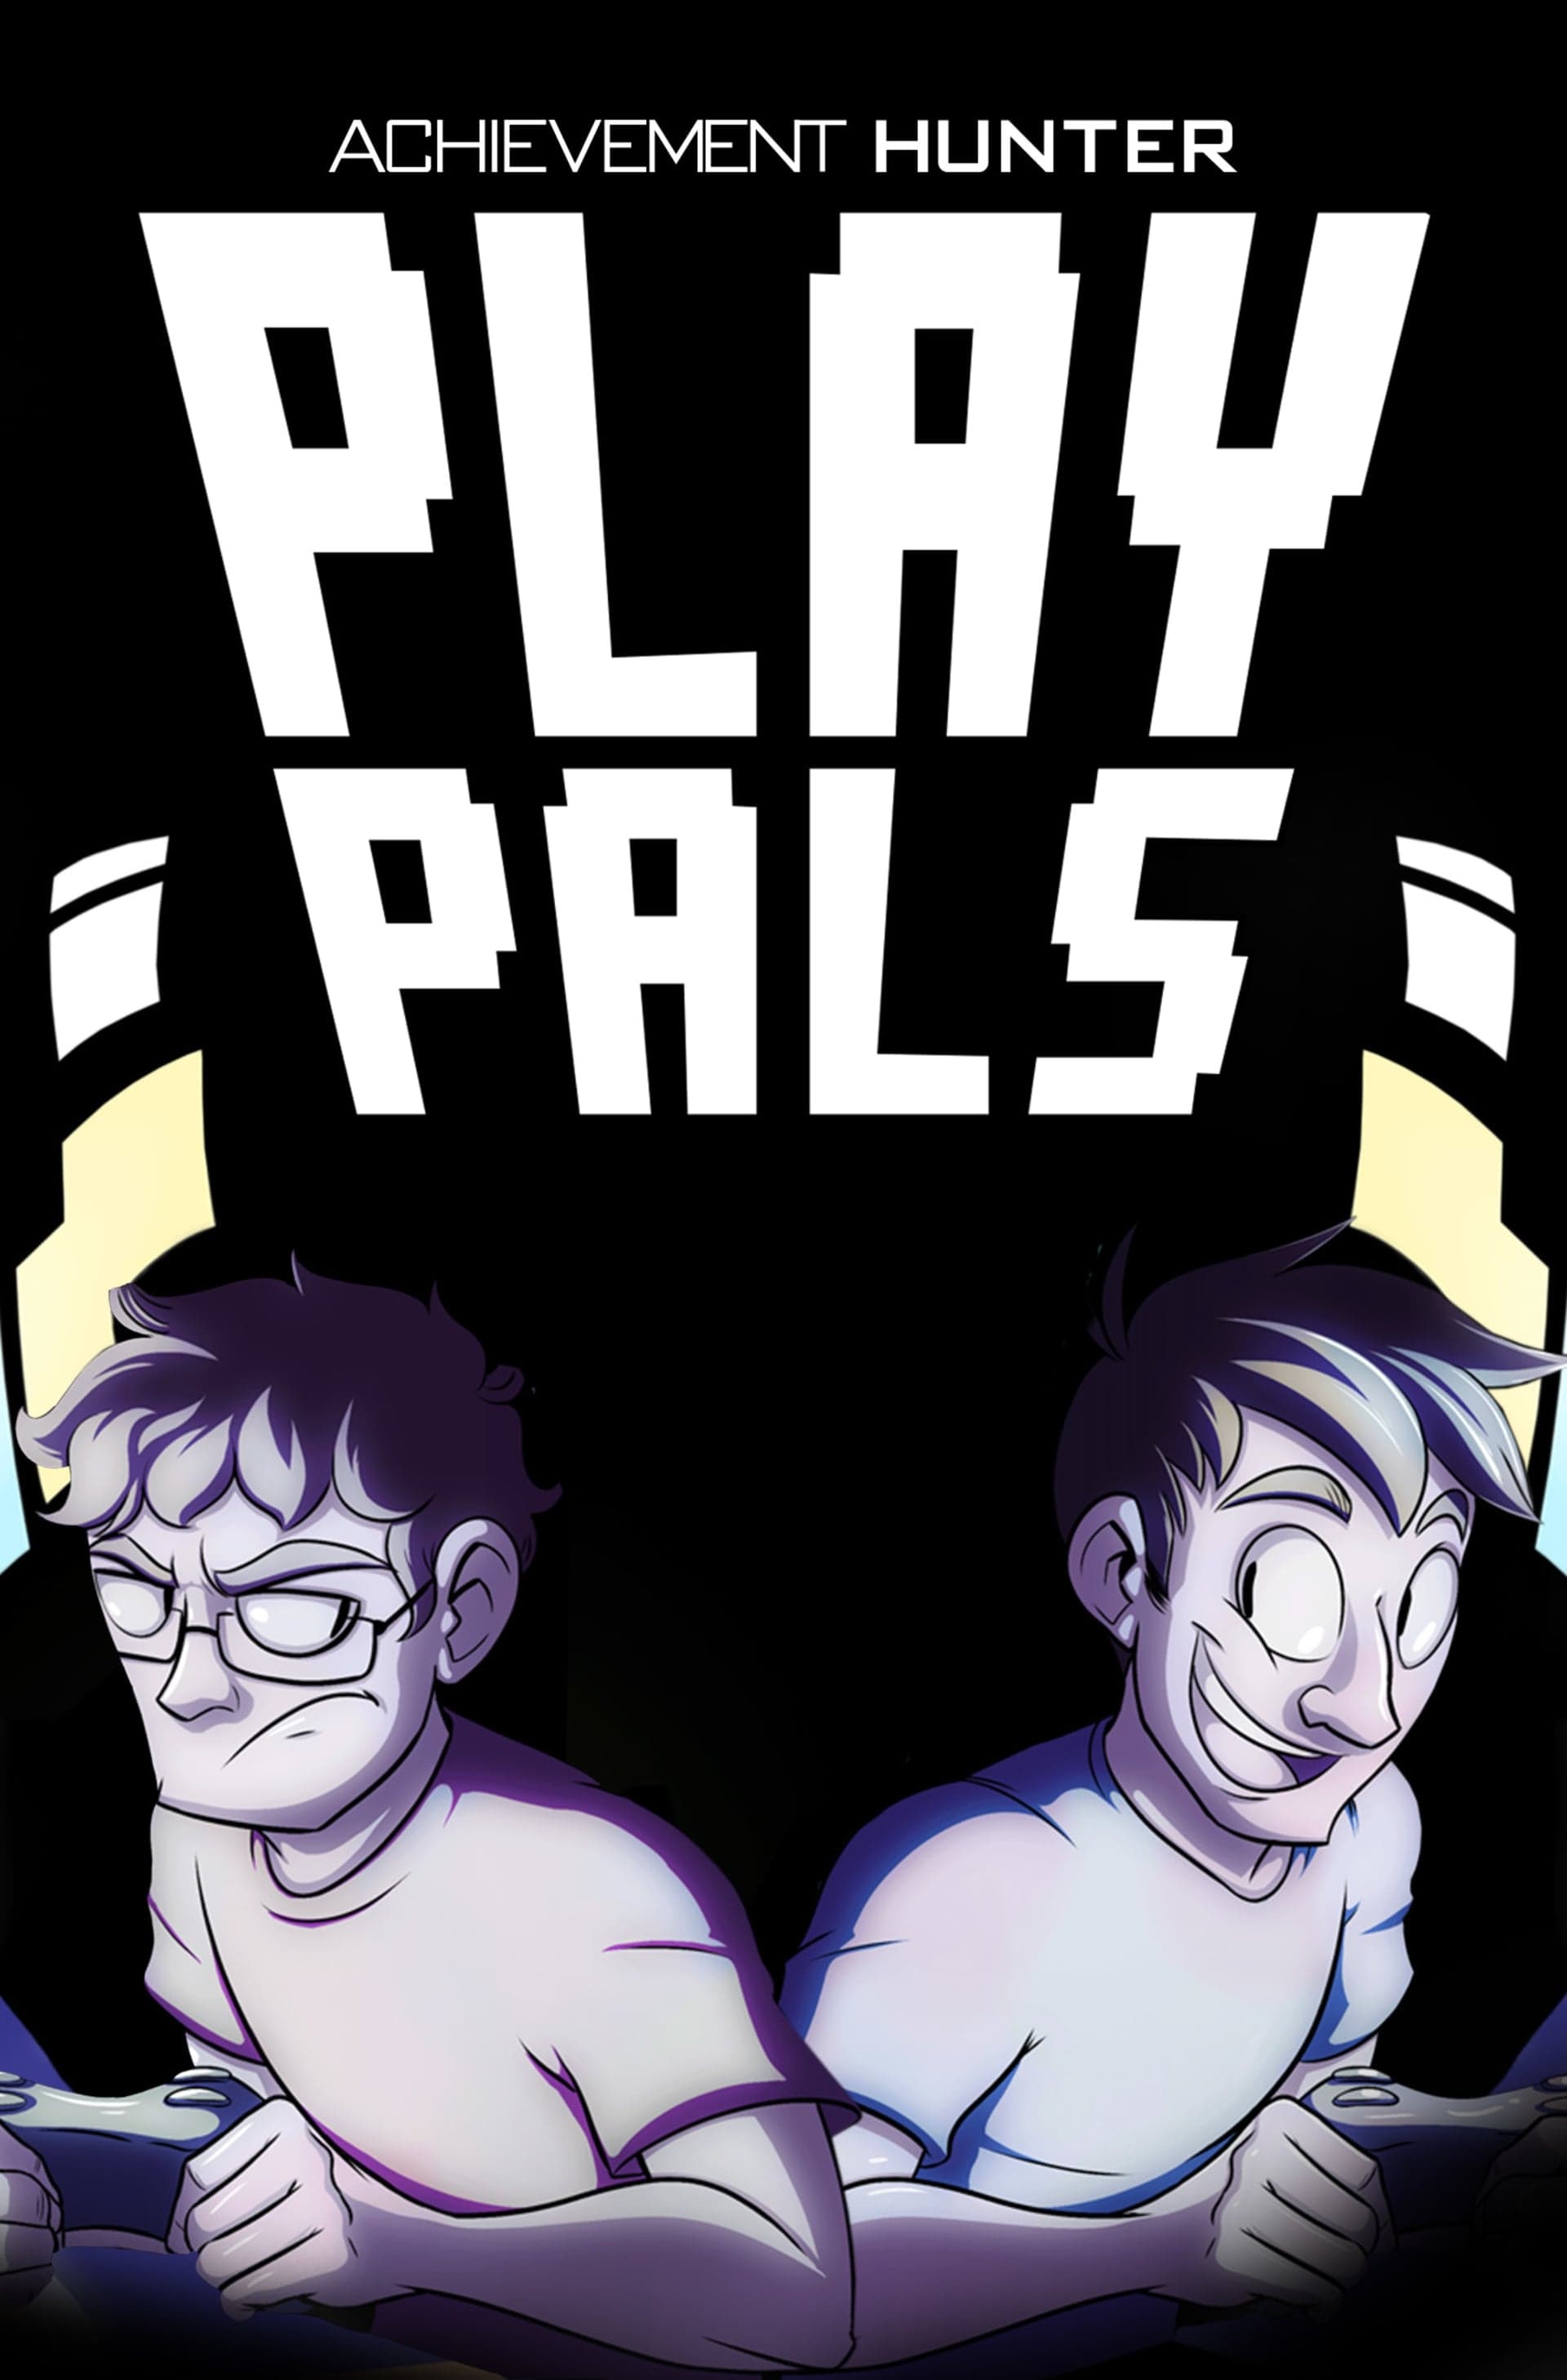 Play Pals